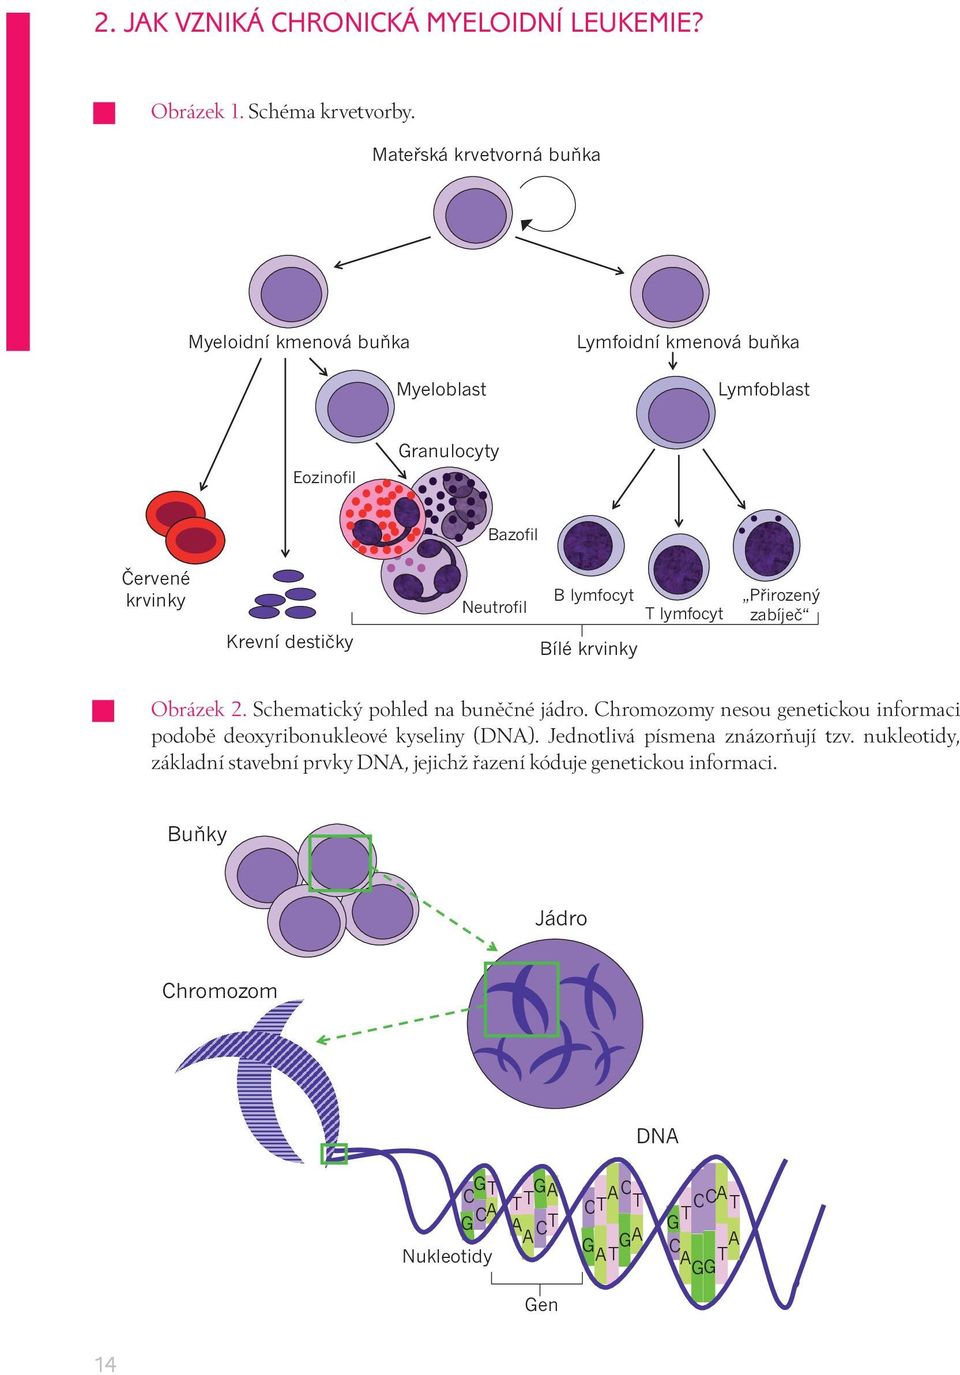 Neutrofil B lymfocyt Bílé krvinky T lymfocyt Přirozený zabíječ Obrázek 2. Schematický pohled na buněčné jádro.